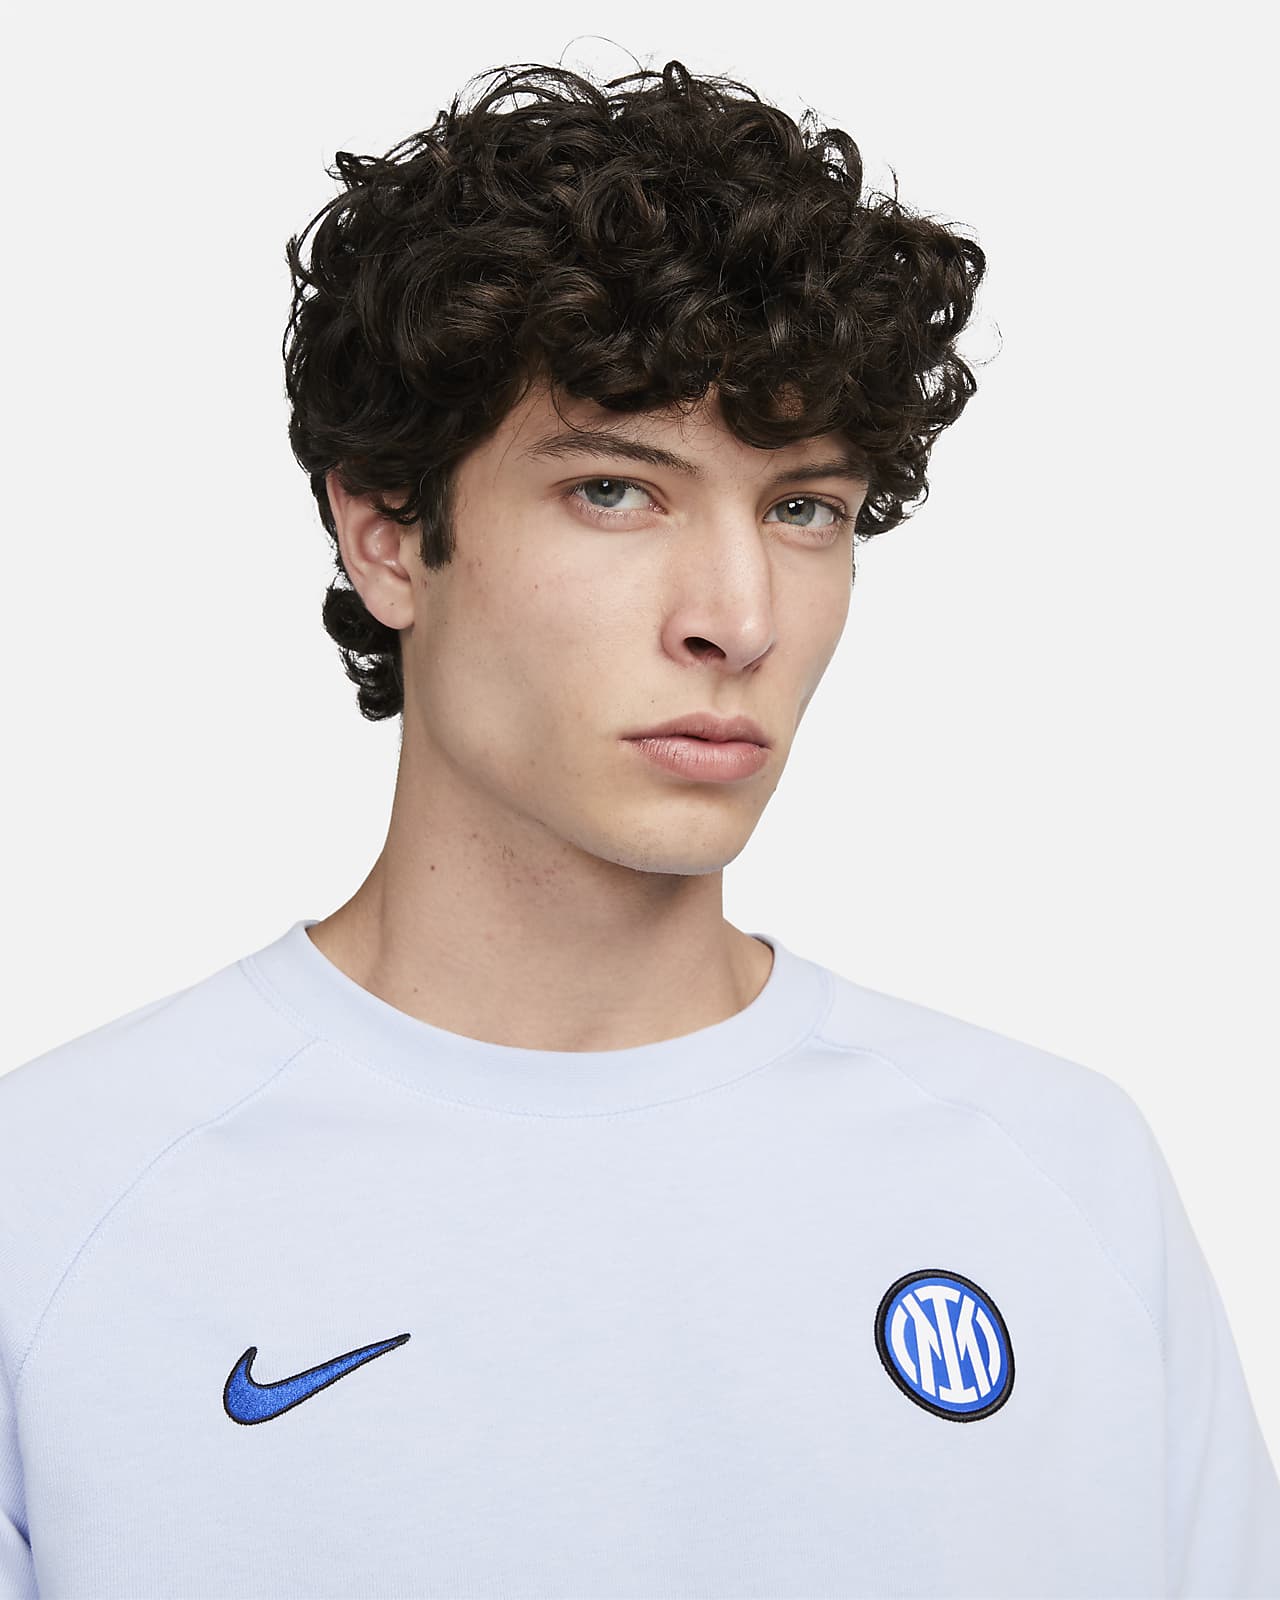 Chelsea FC Travel Men's Nike Short-Sleeve Soccer Top.